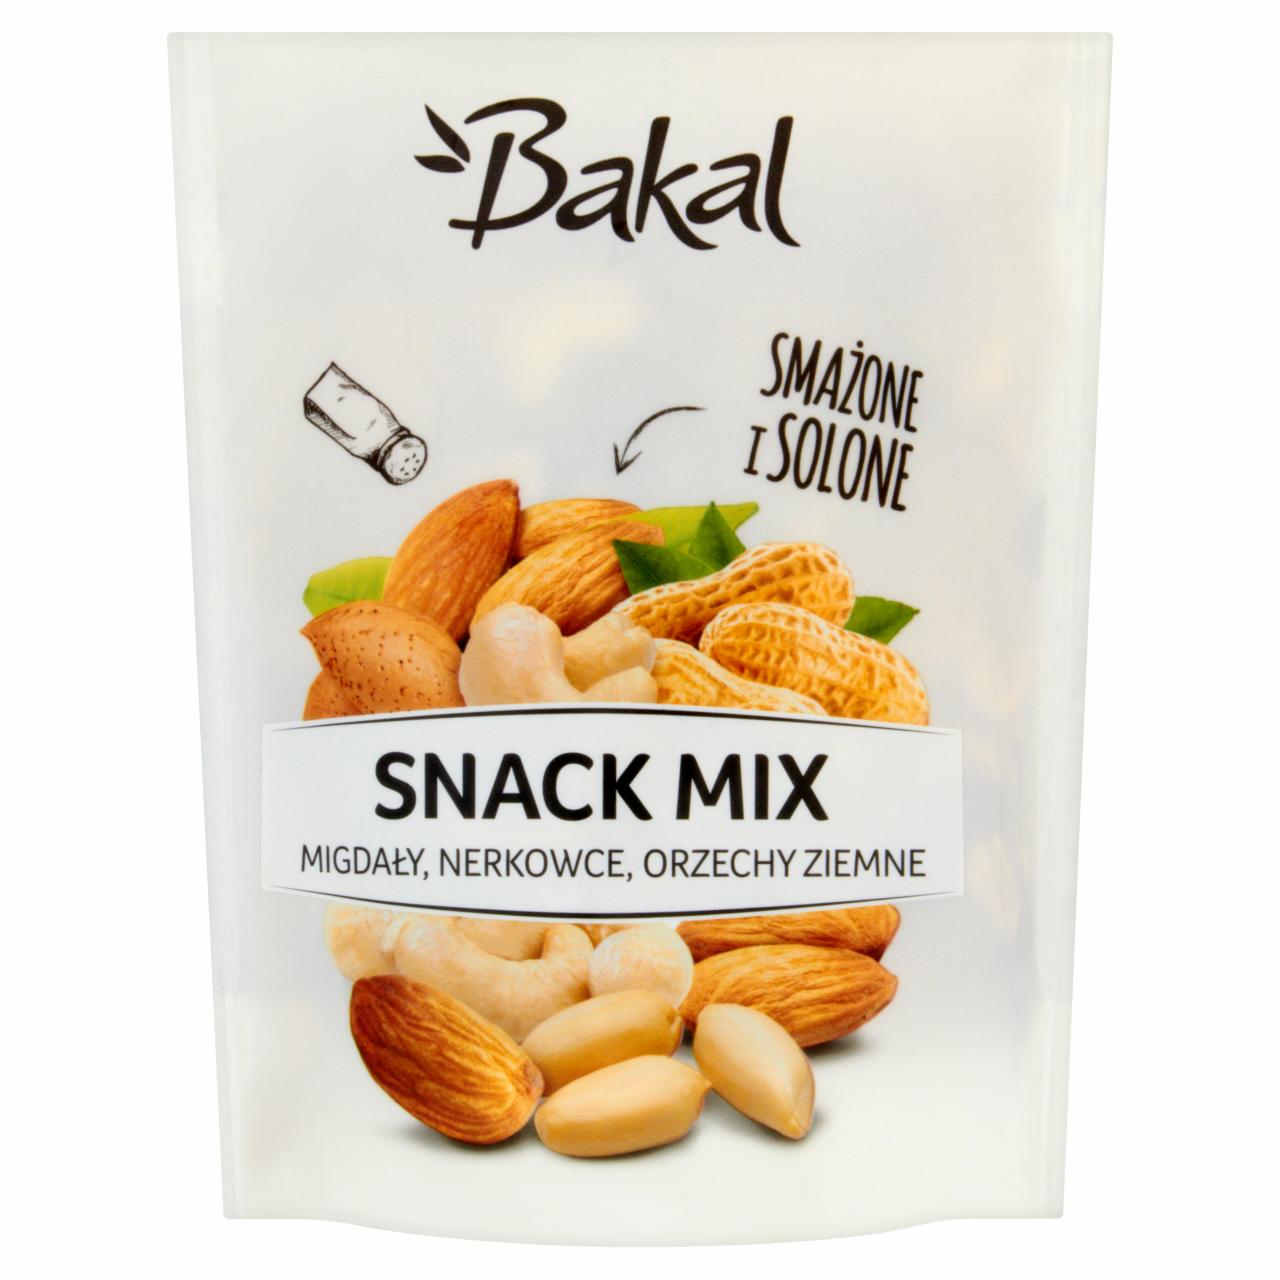 Zdjęcia - Bakal Snack Mix Mieszanka orzechów solonych 150 g